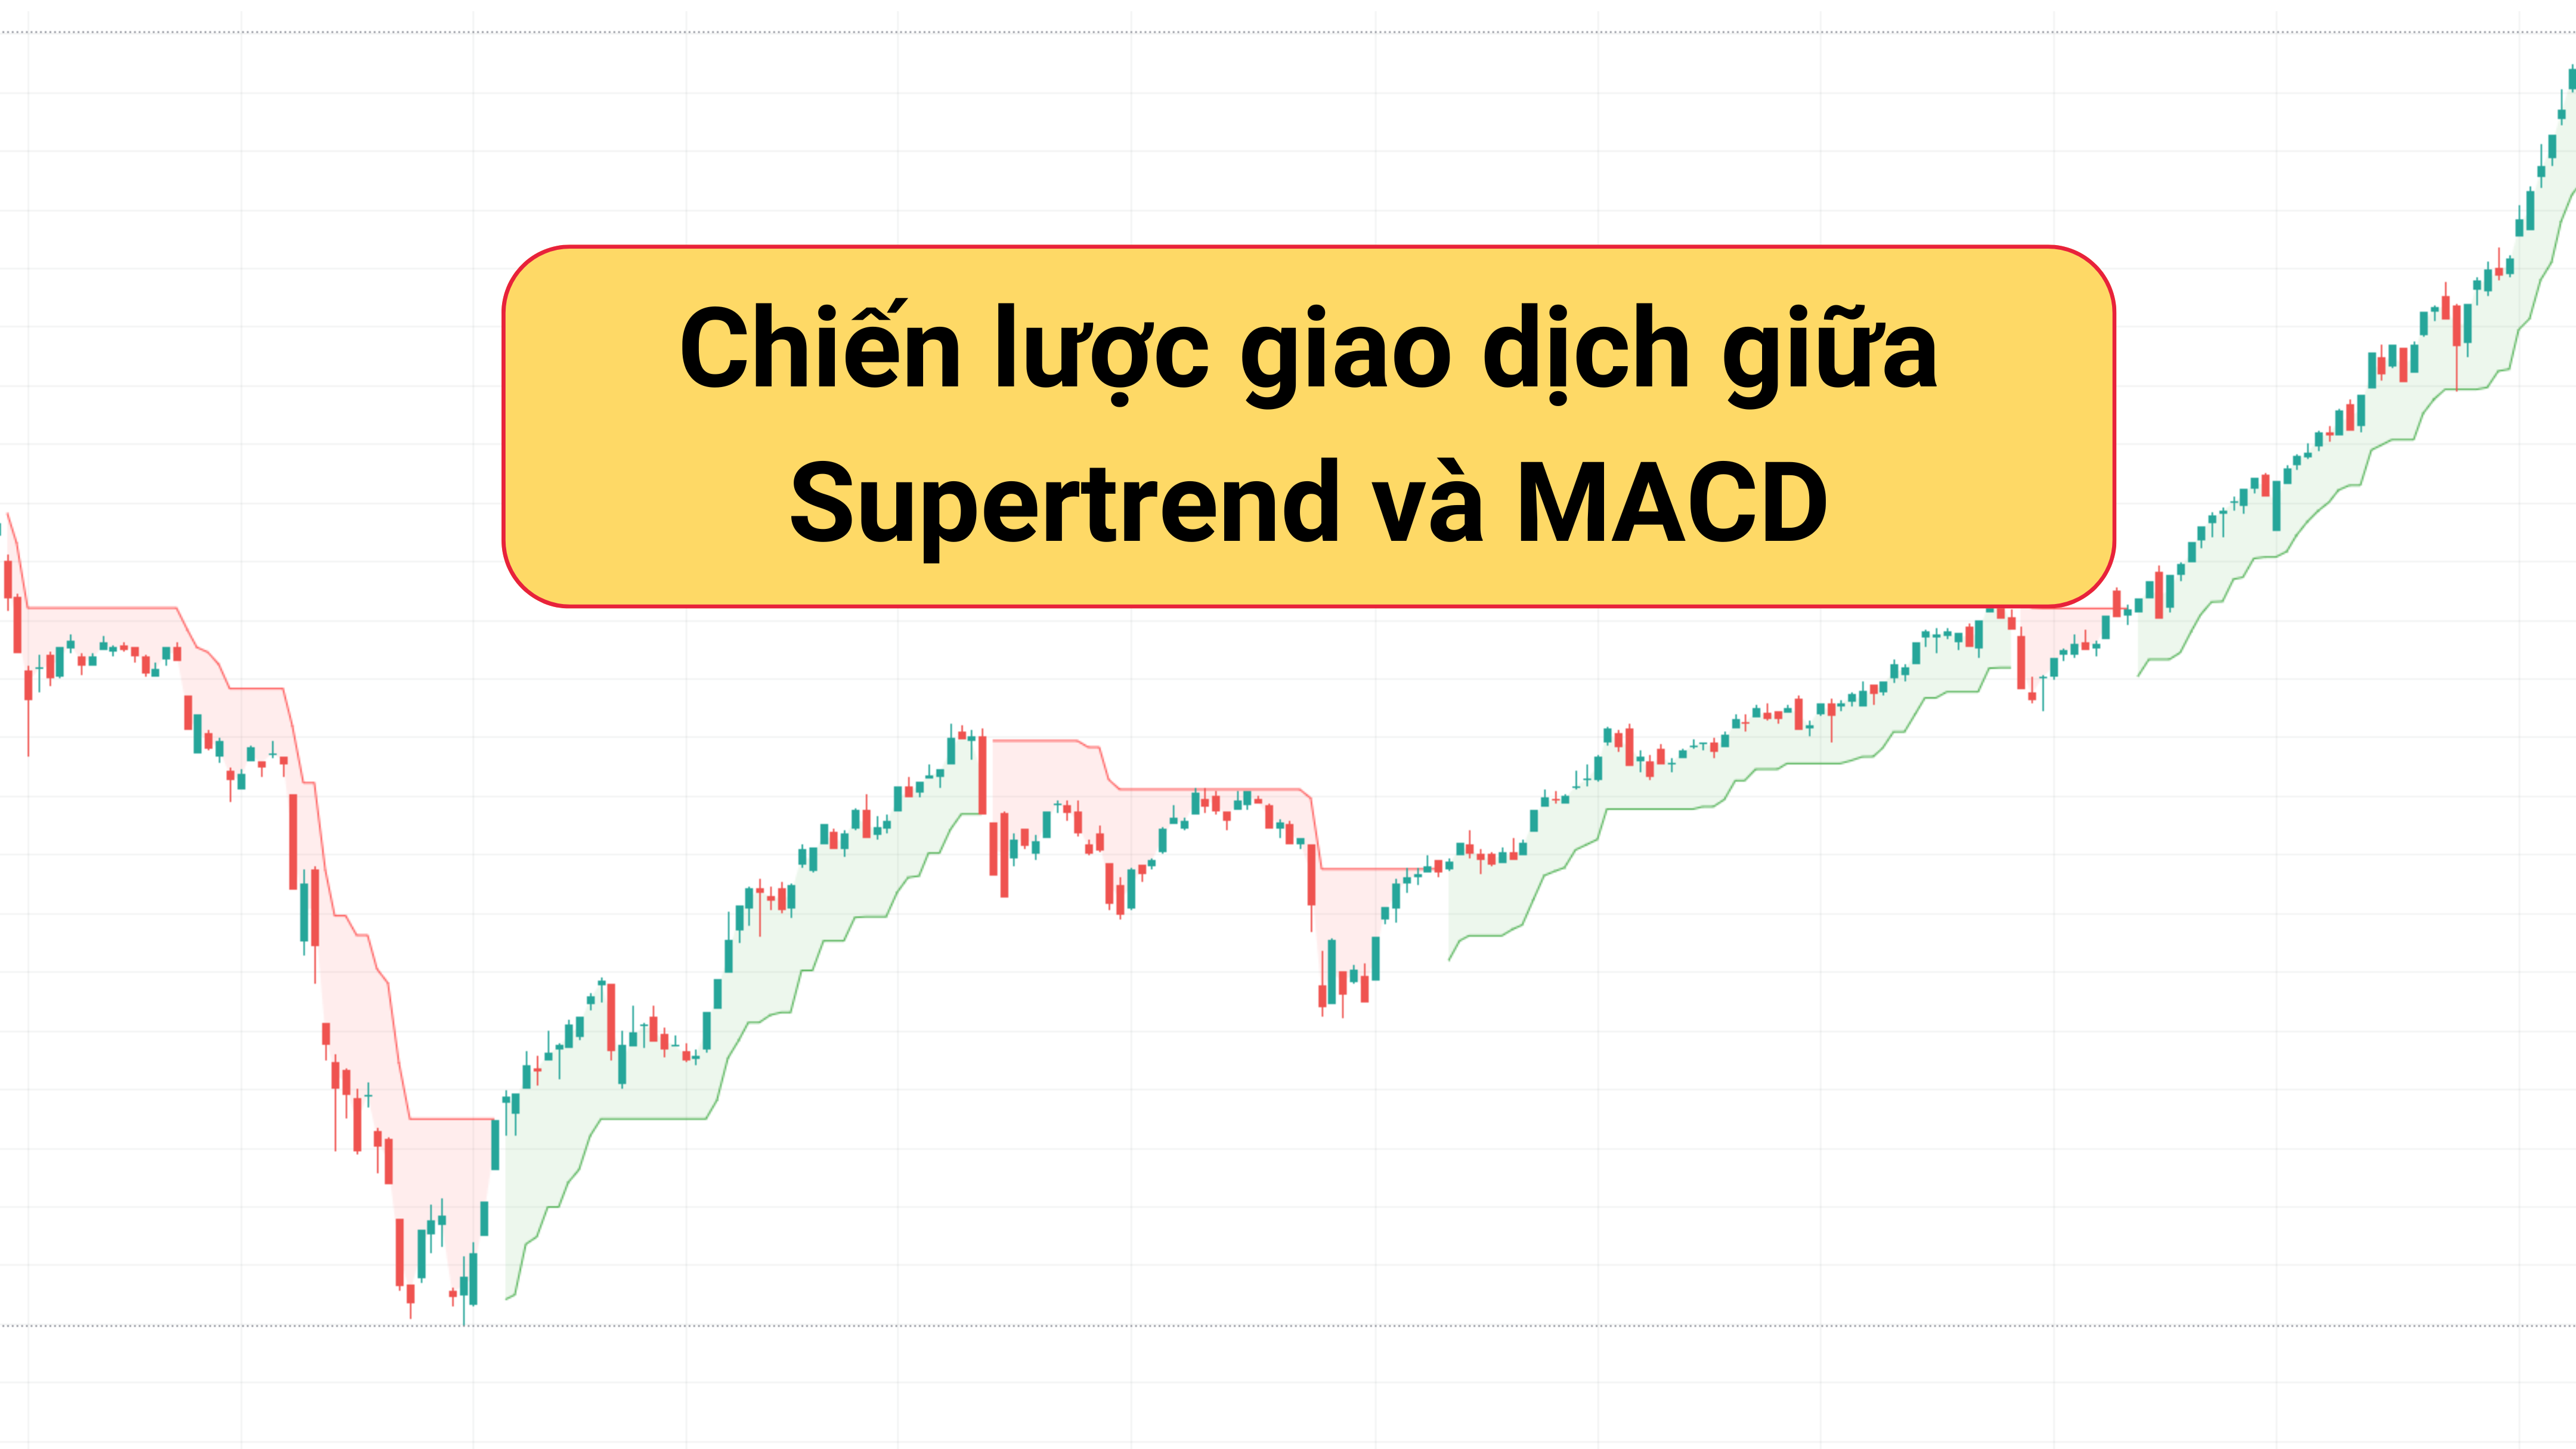 Chiến lược giao dịch giữa Supertrend và MACD